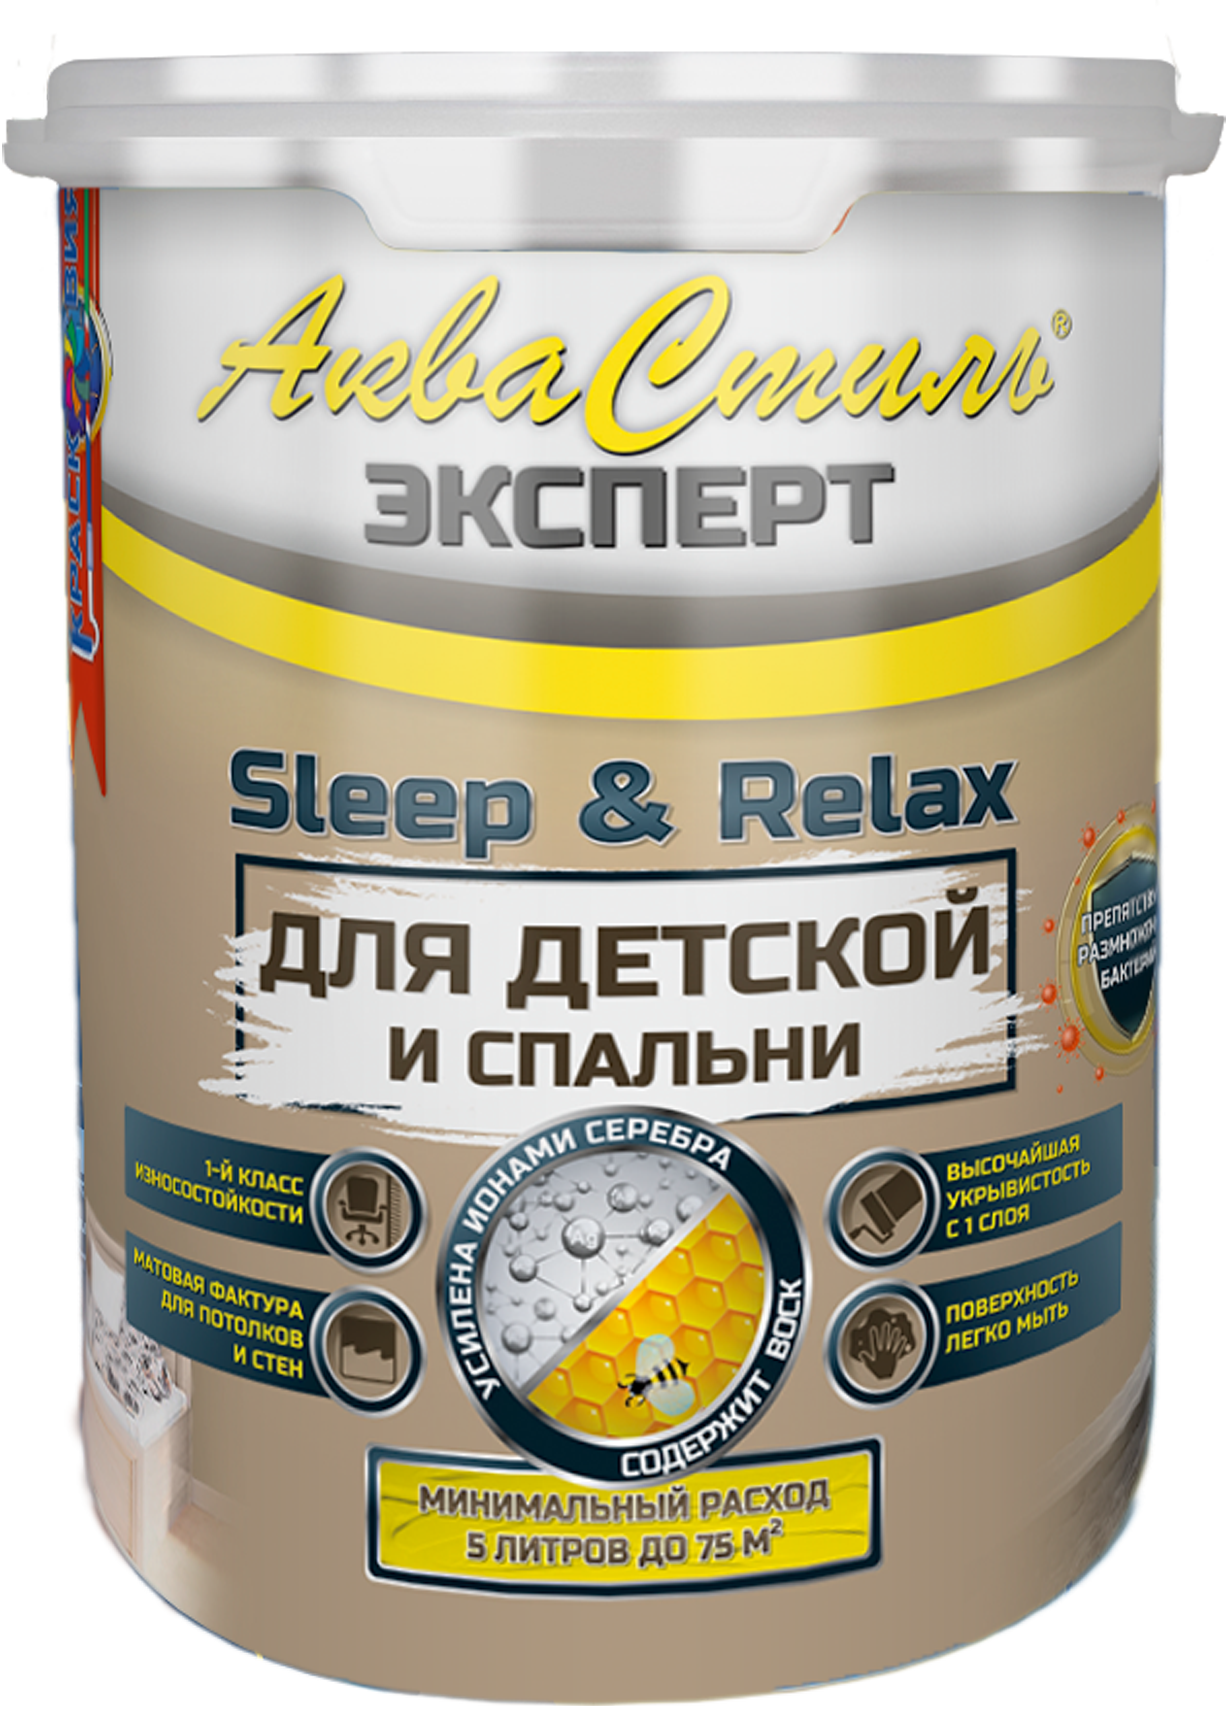 Краска для стен и потолков в детских и спальнях, АкваСтиль Эксперт Sleep&Relax, 1 л.